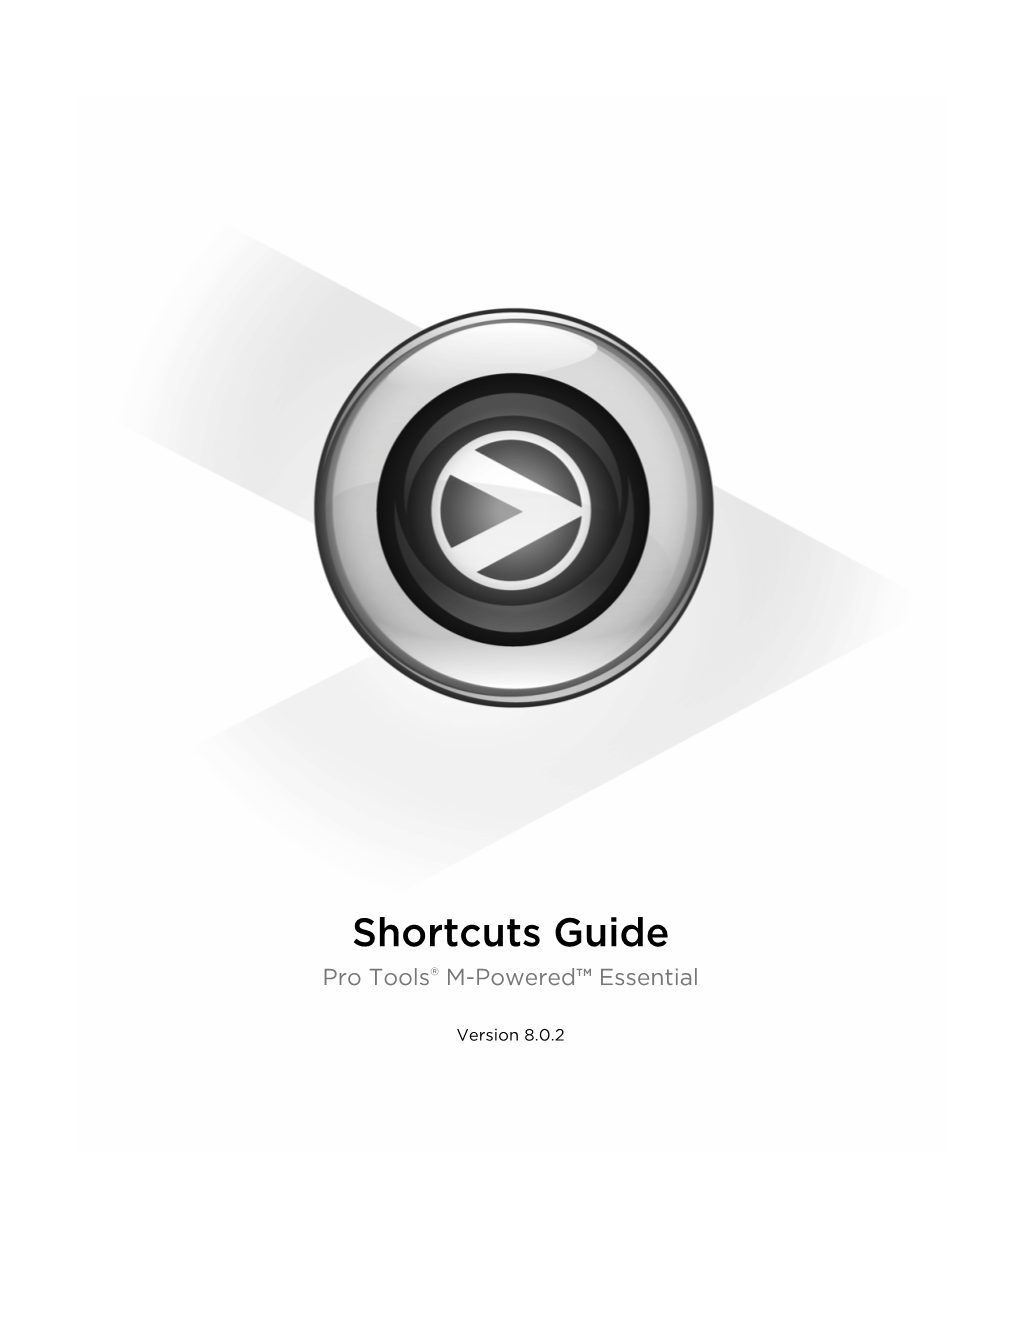 Pro Tools Shortcuts Guide